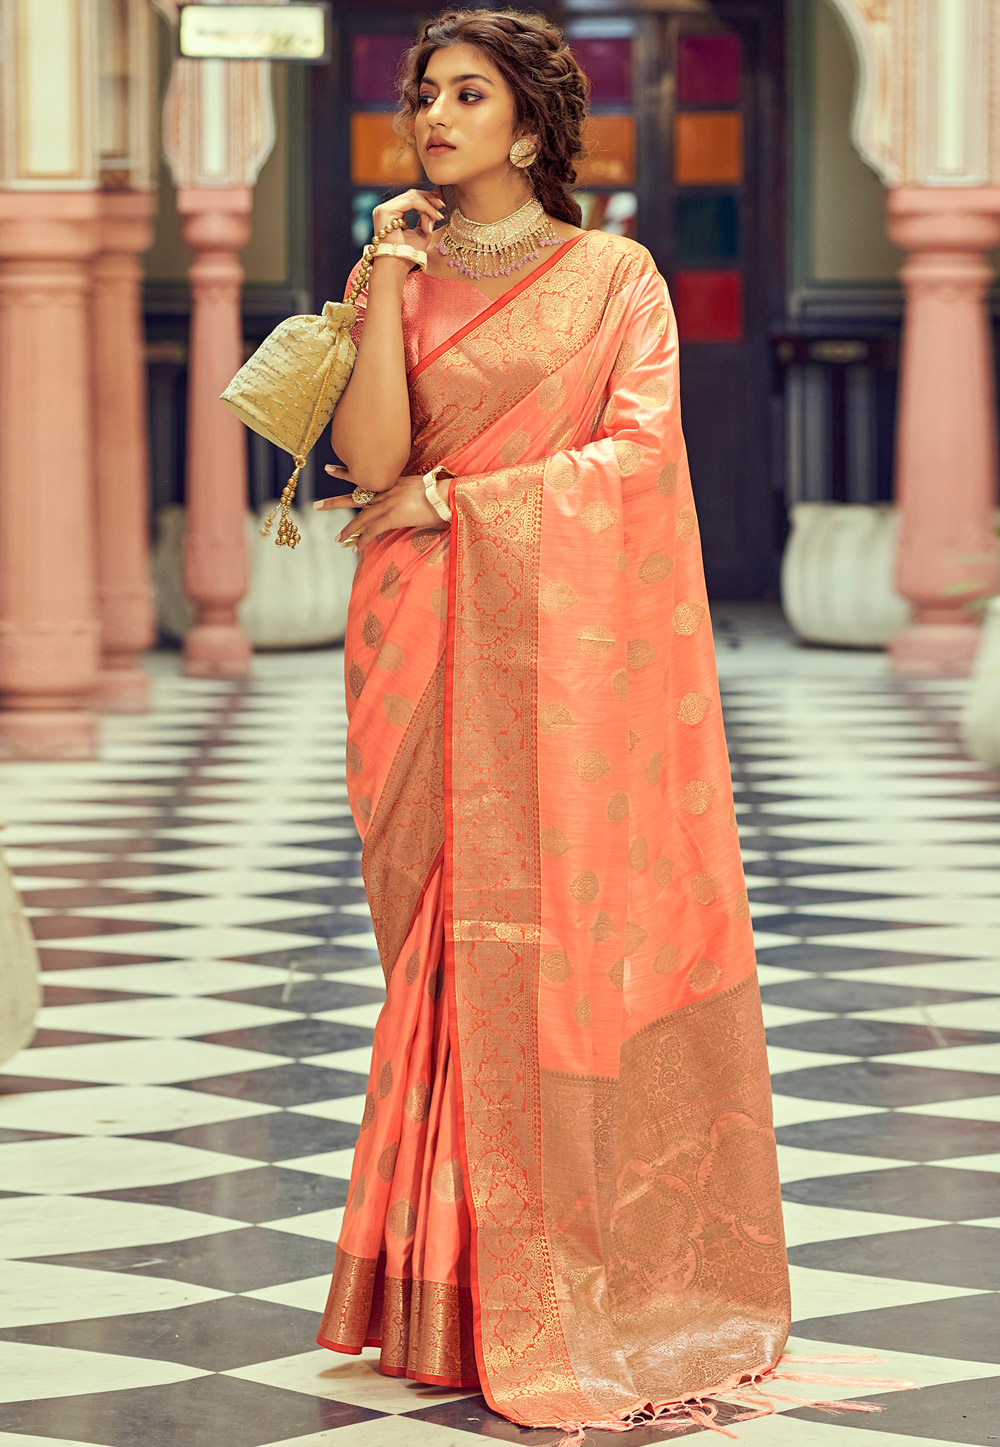 Soft Peach & Green Banarasi Saree Blouse for Woman Flawy Light Weight Saree  Party-wear Saree - Etsy